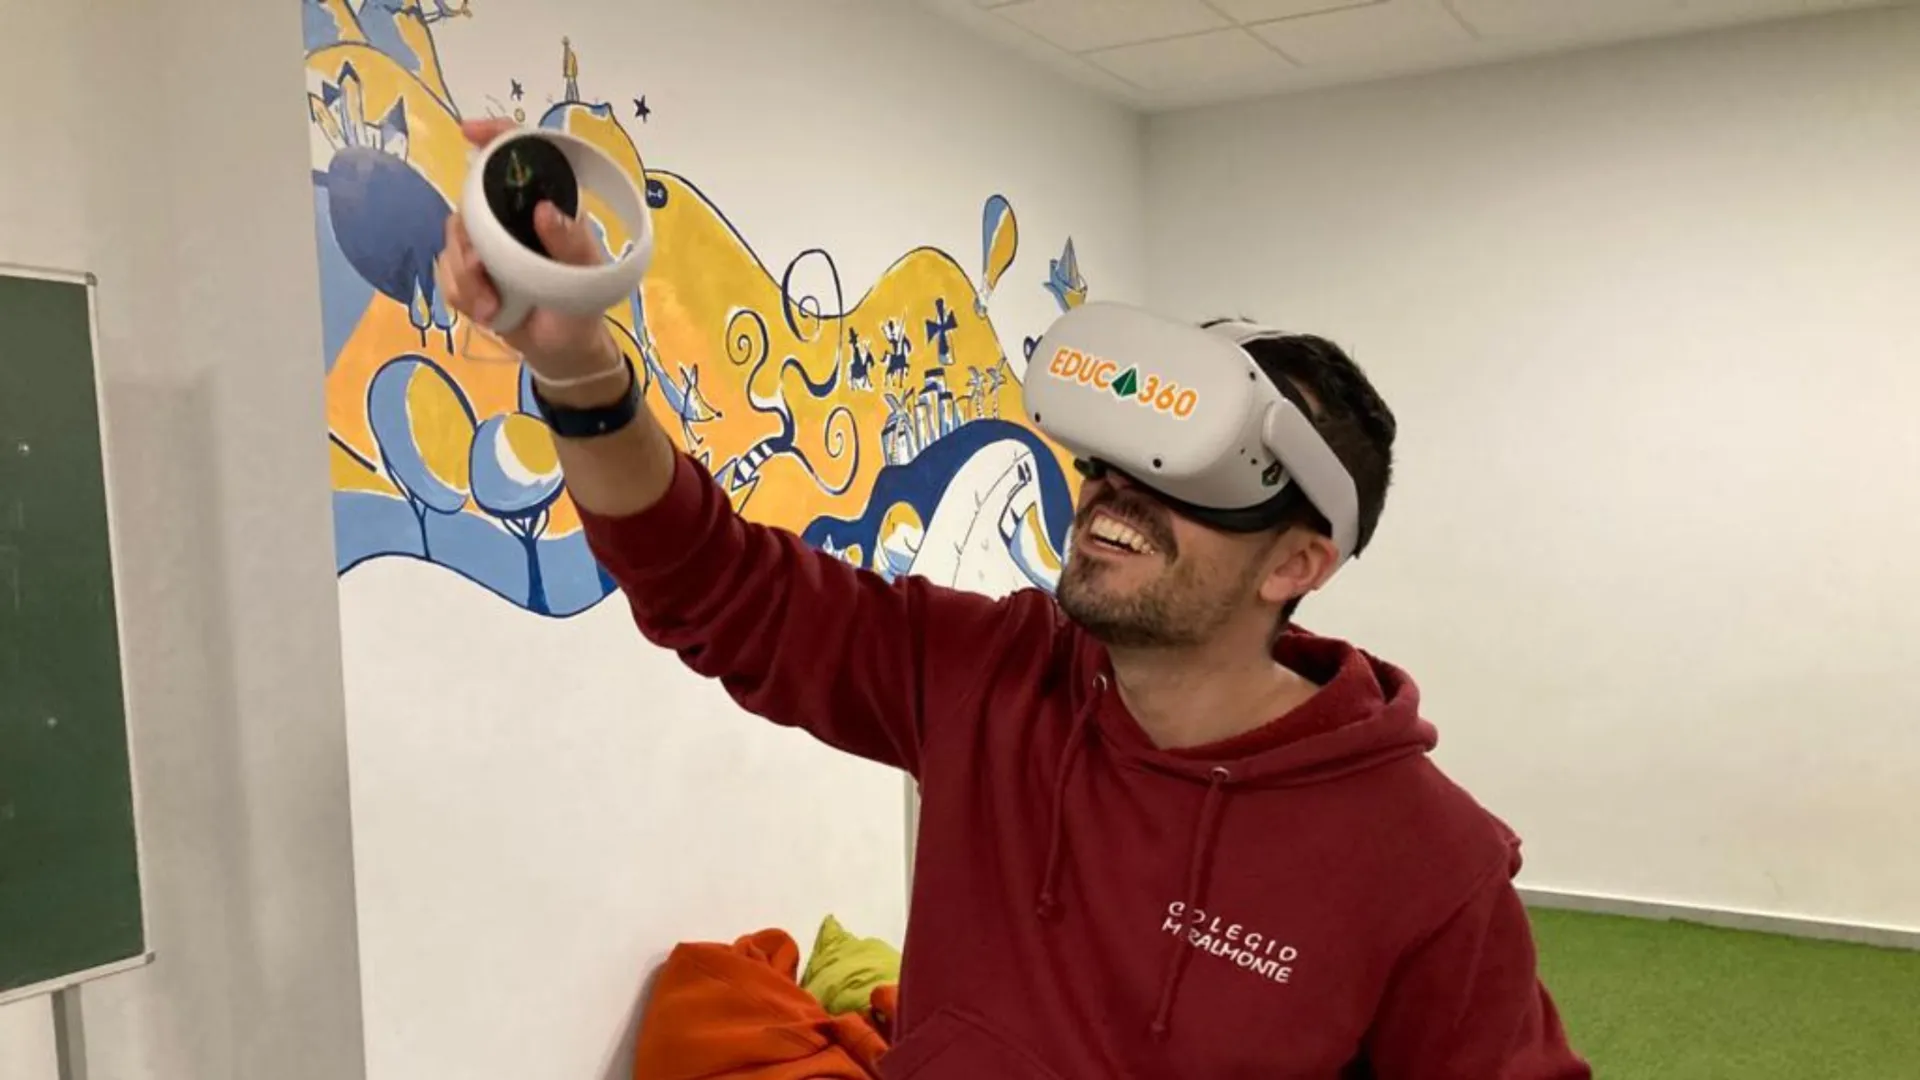 Lo que la realidad virtual puede aportar a la educación